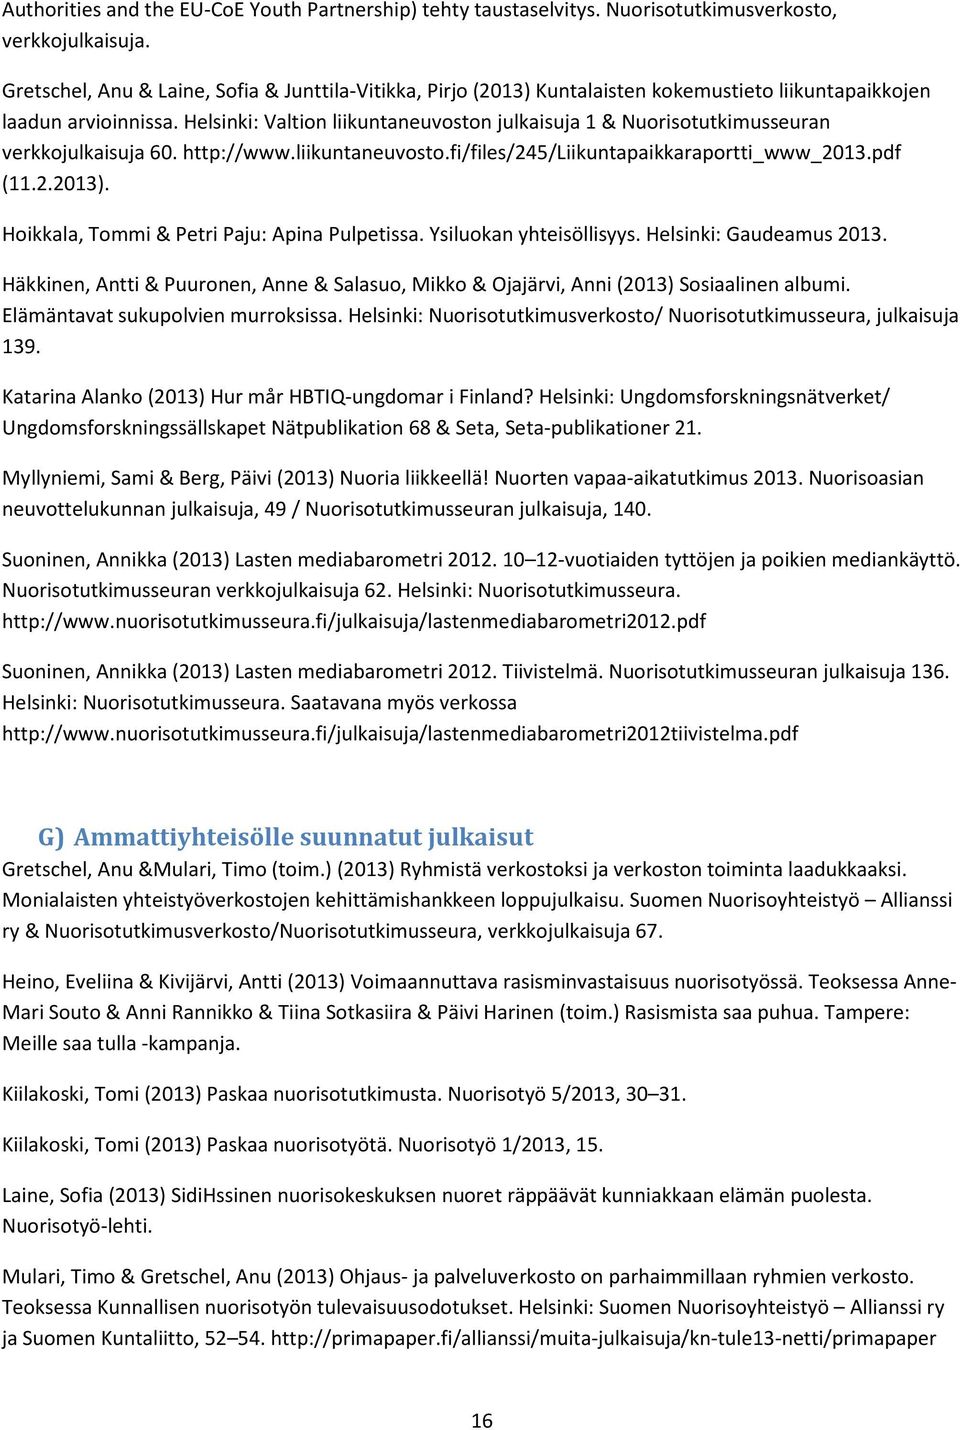 Helsinki: Valtion liikuntaneuvoston julkaisuja 1 & Nuorisotutkimusseuran verkkojulkaisuja 60. http://www.liikuntaneuvosto.fi/files/245/liikuntapaikkaraportti_www_2013.pdf (11.2.2013).